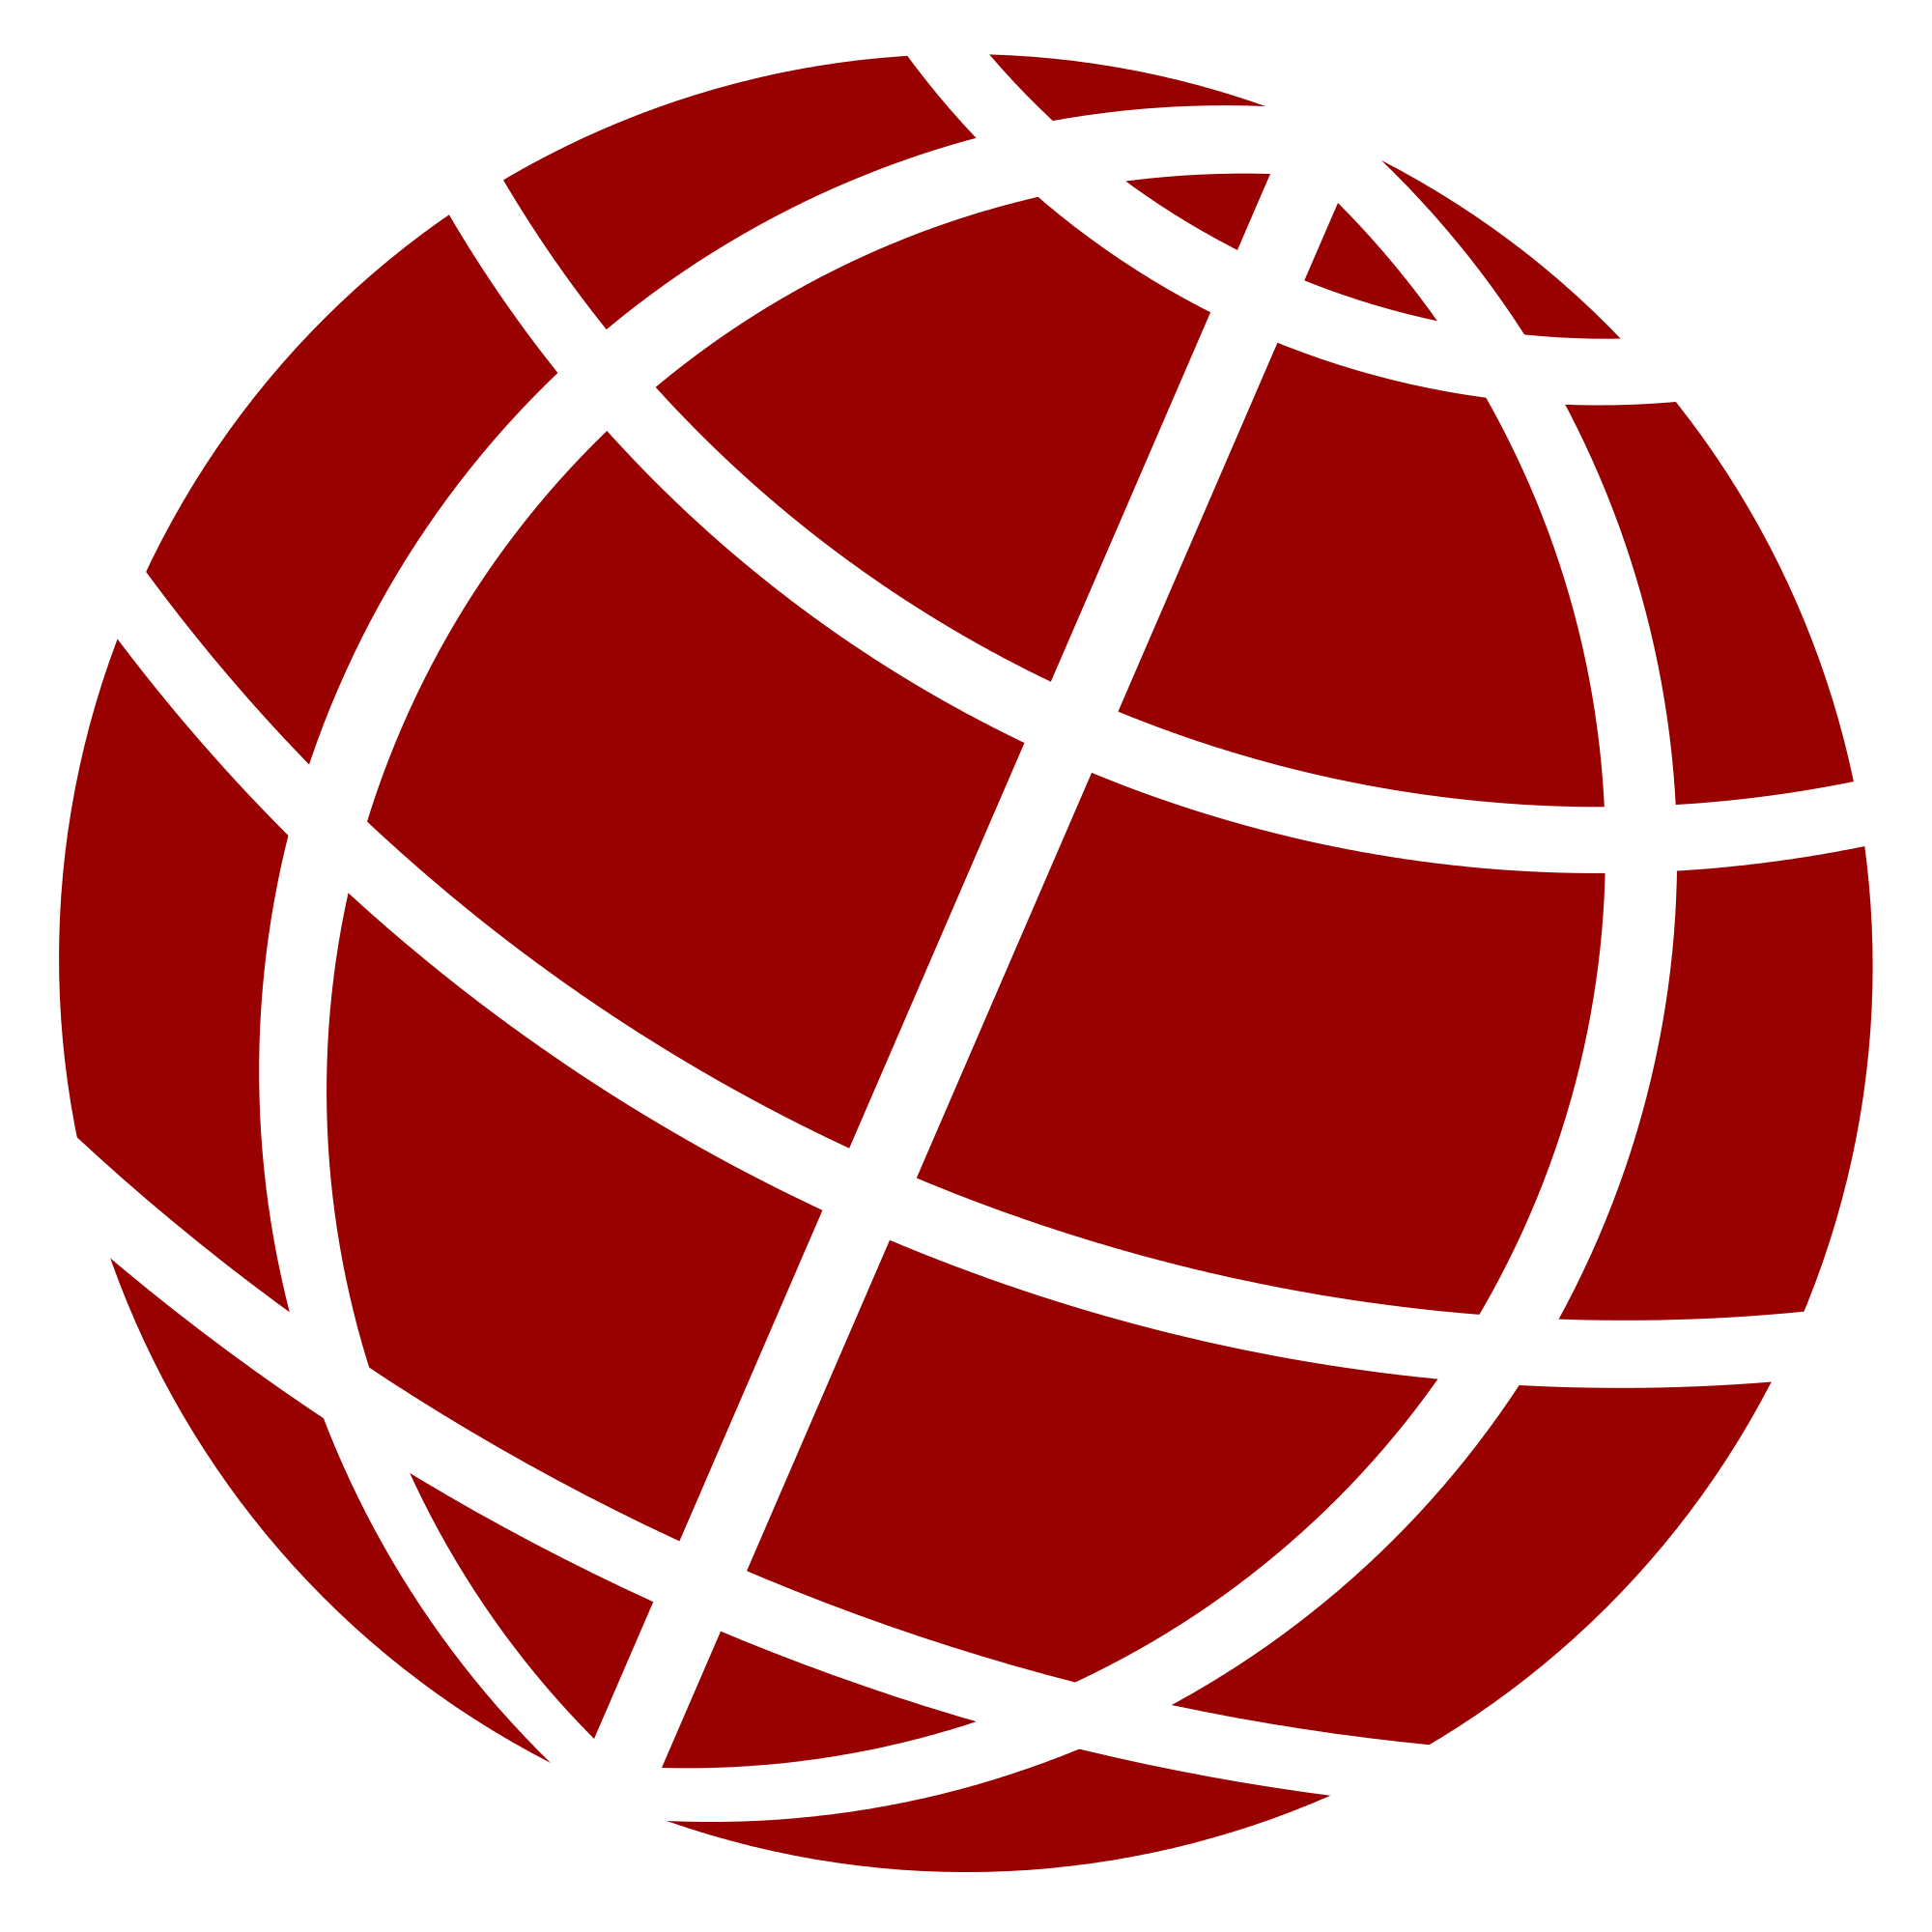 Red Website Logo - Globe PNG Logo Image - Free Logo Png